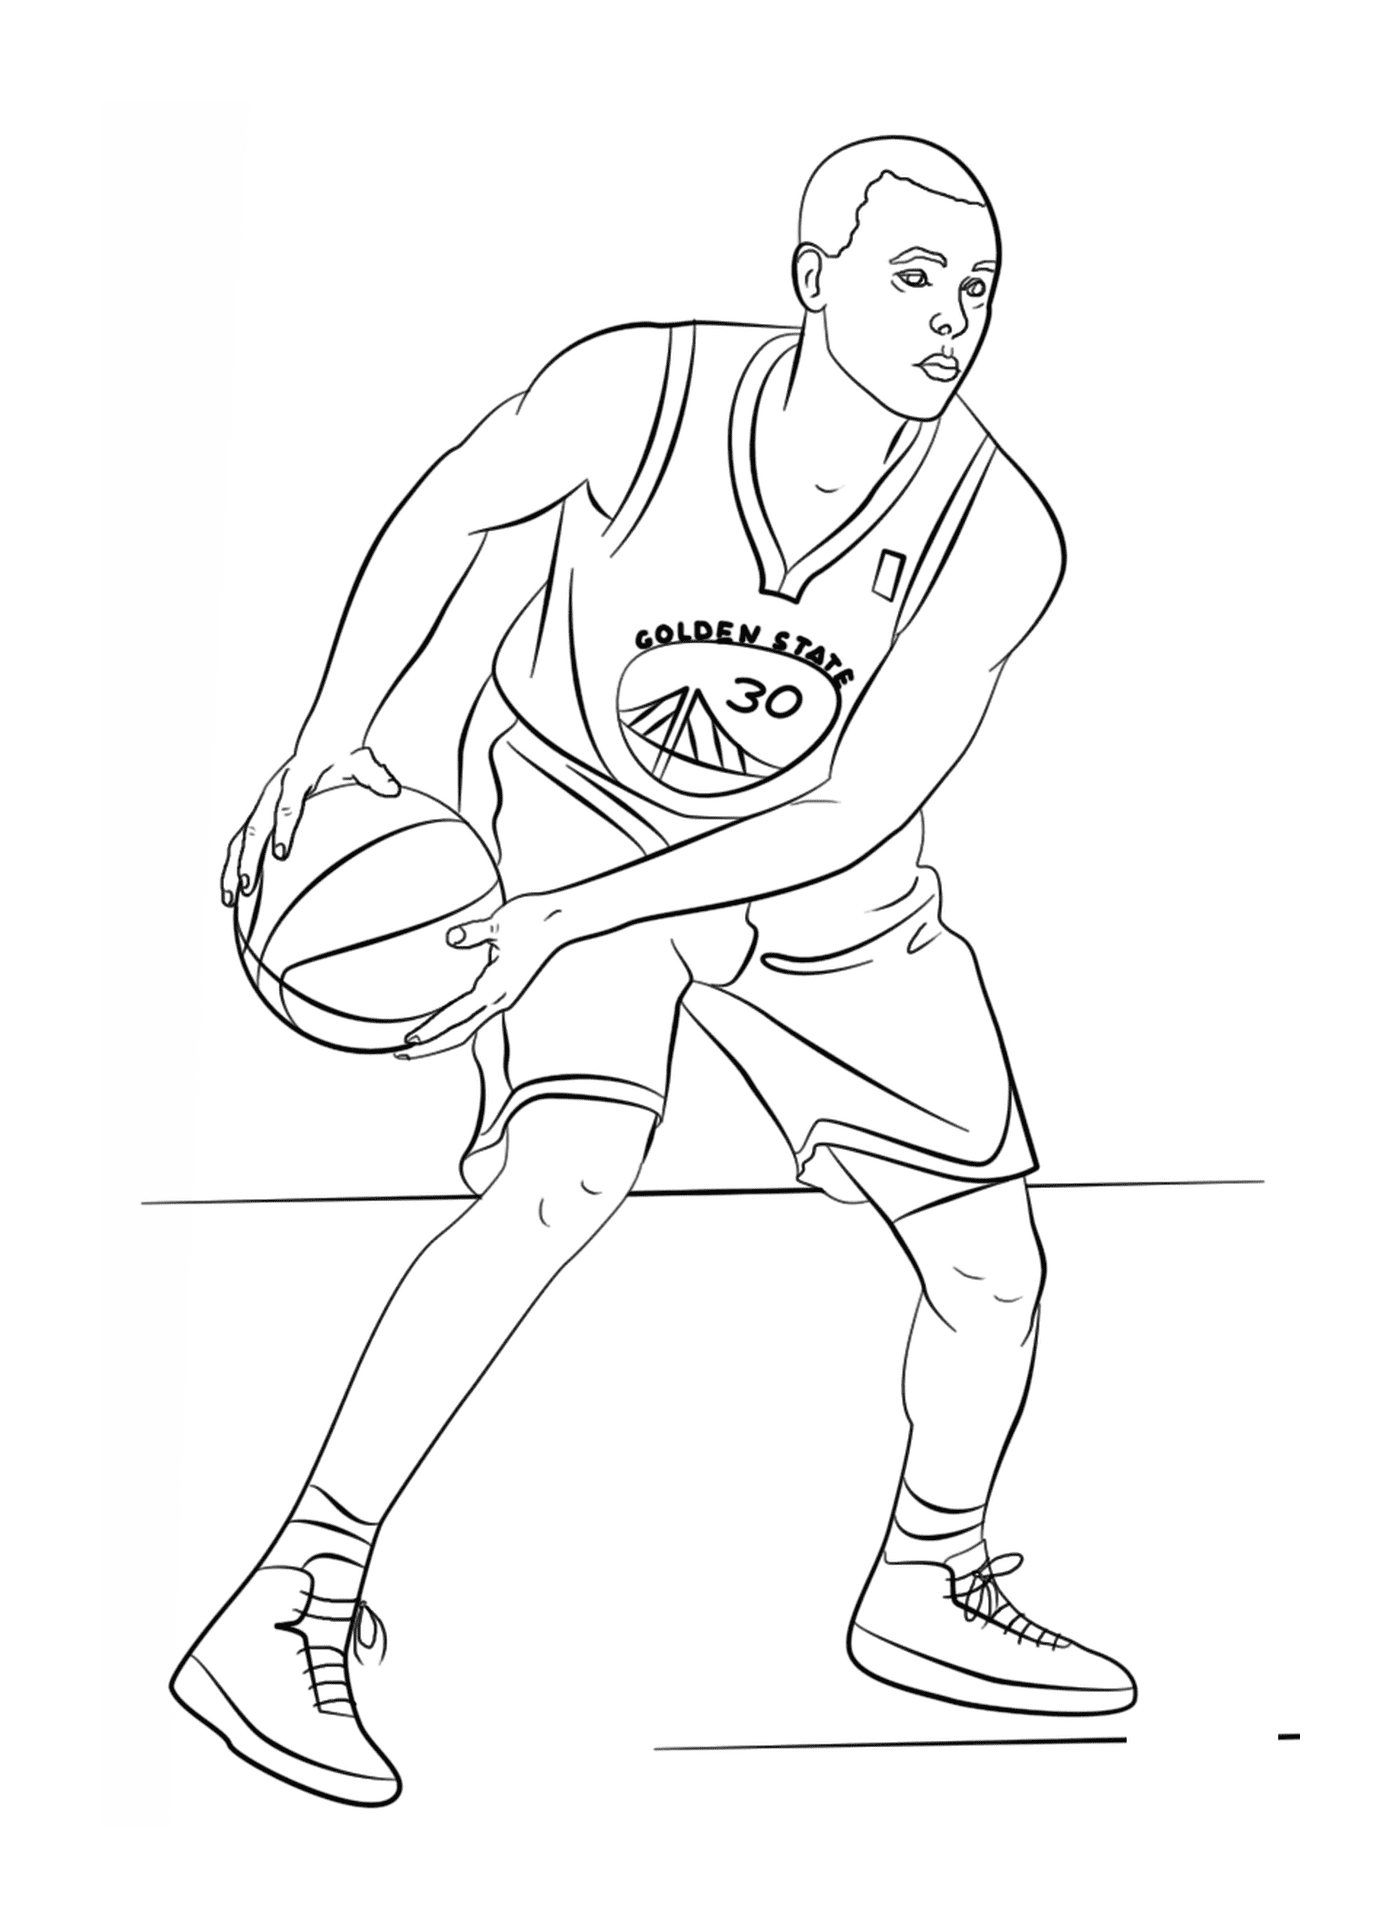  ستيفن كاري، لاعب كرة سلة في كرة السلة الوطنية 